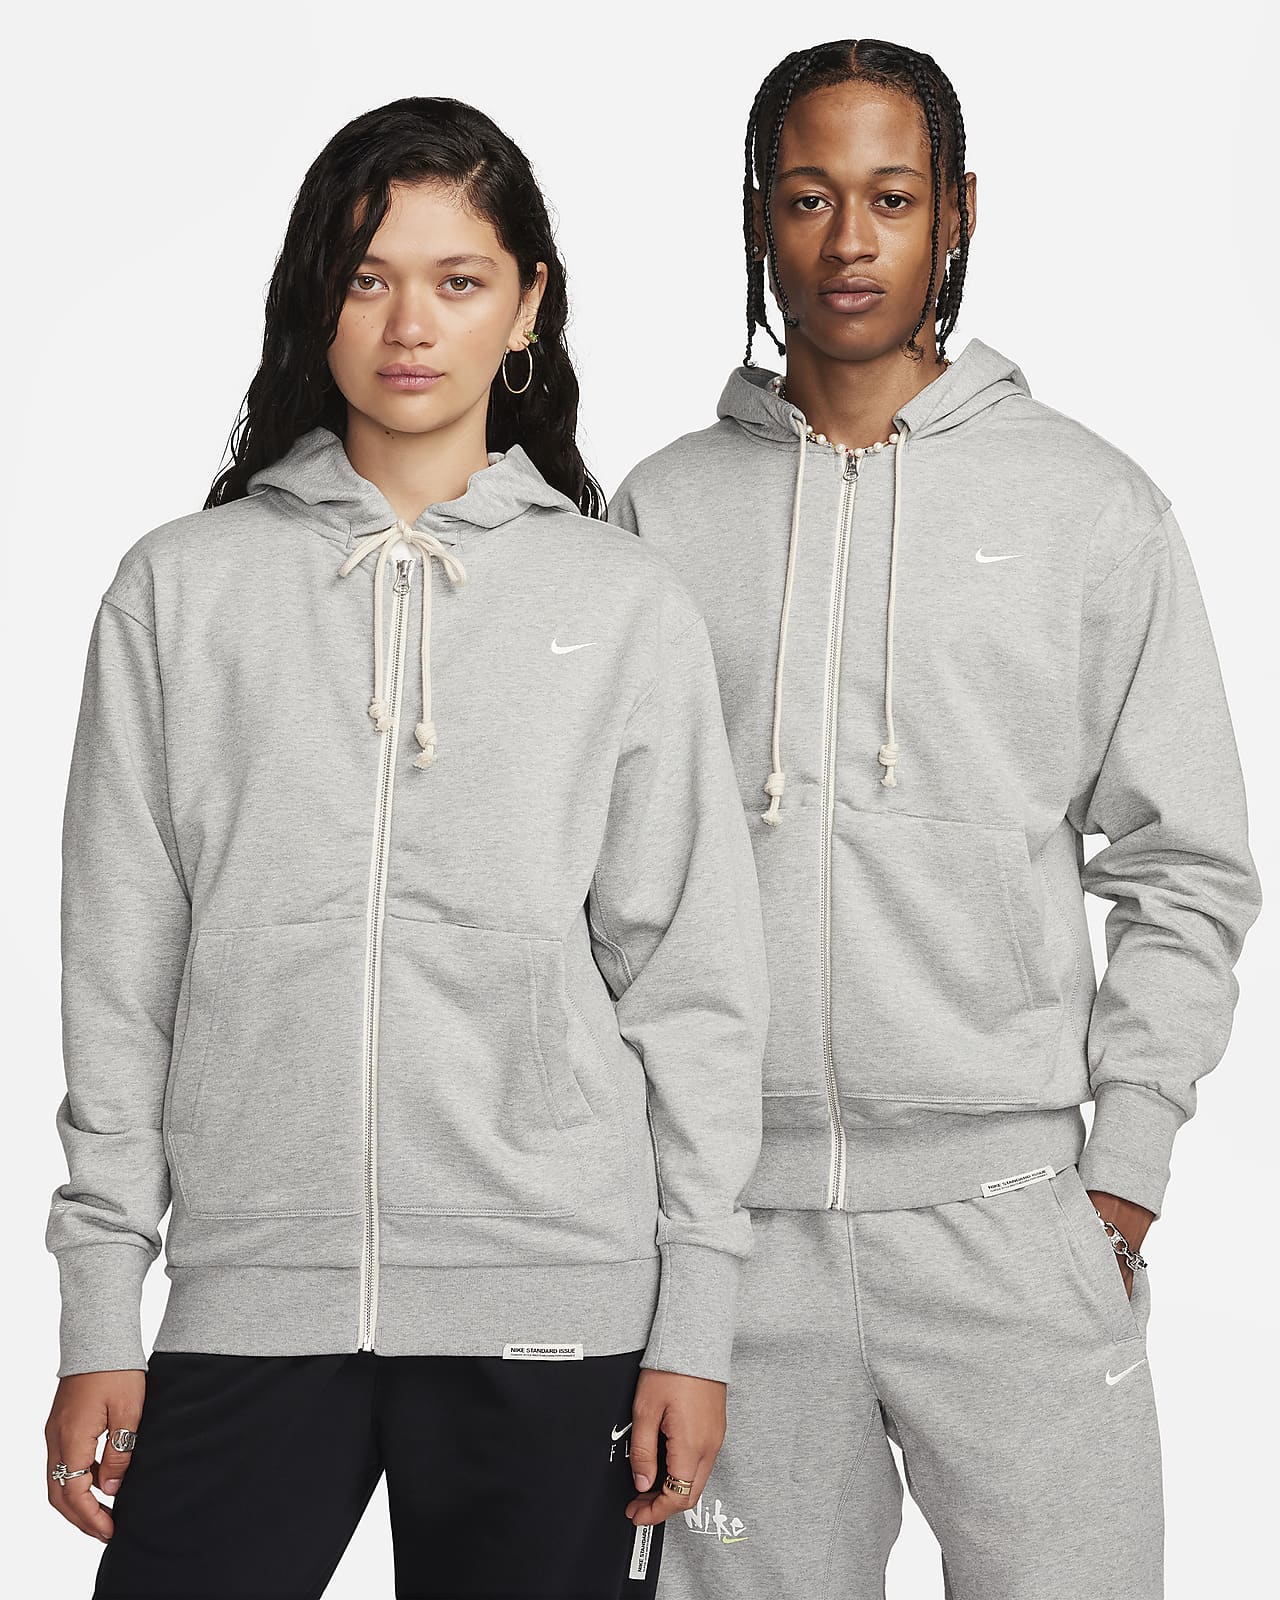 Nike Standard Issue Sudadera con capucha de baloncesto Dri-FIT con cremallera completa - Hombre